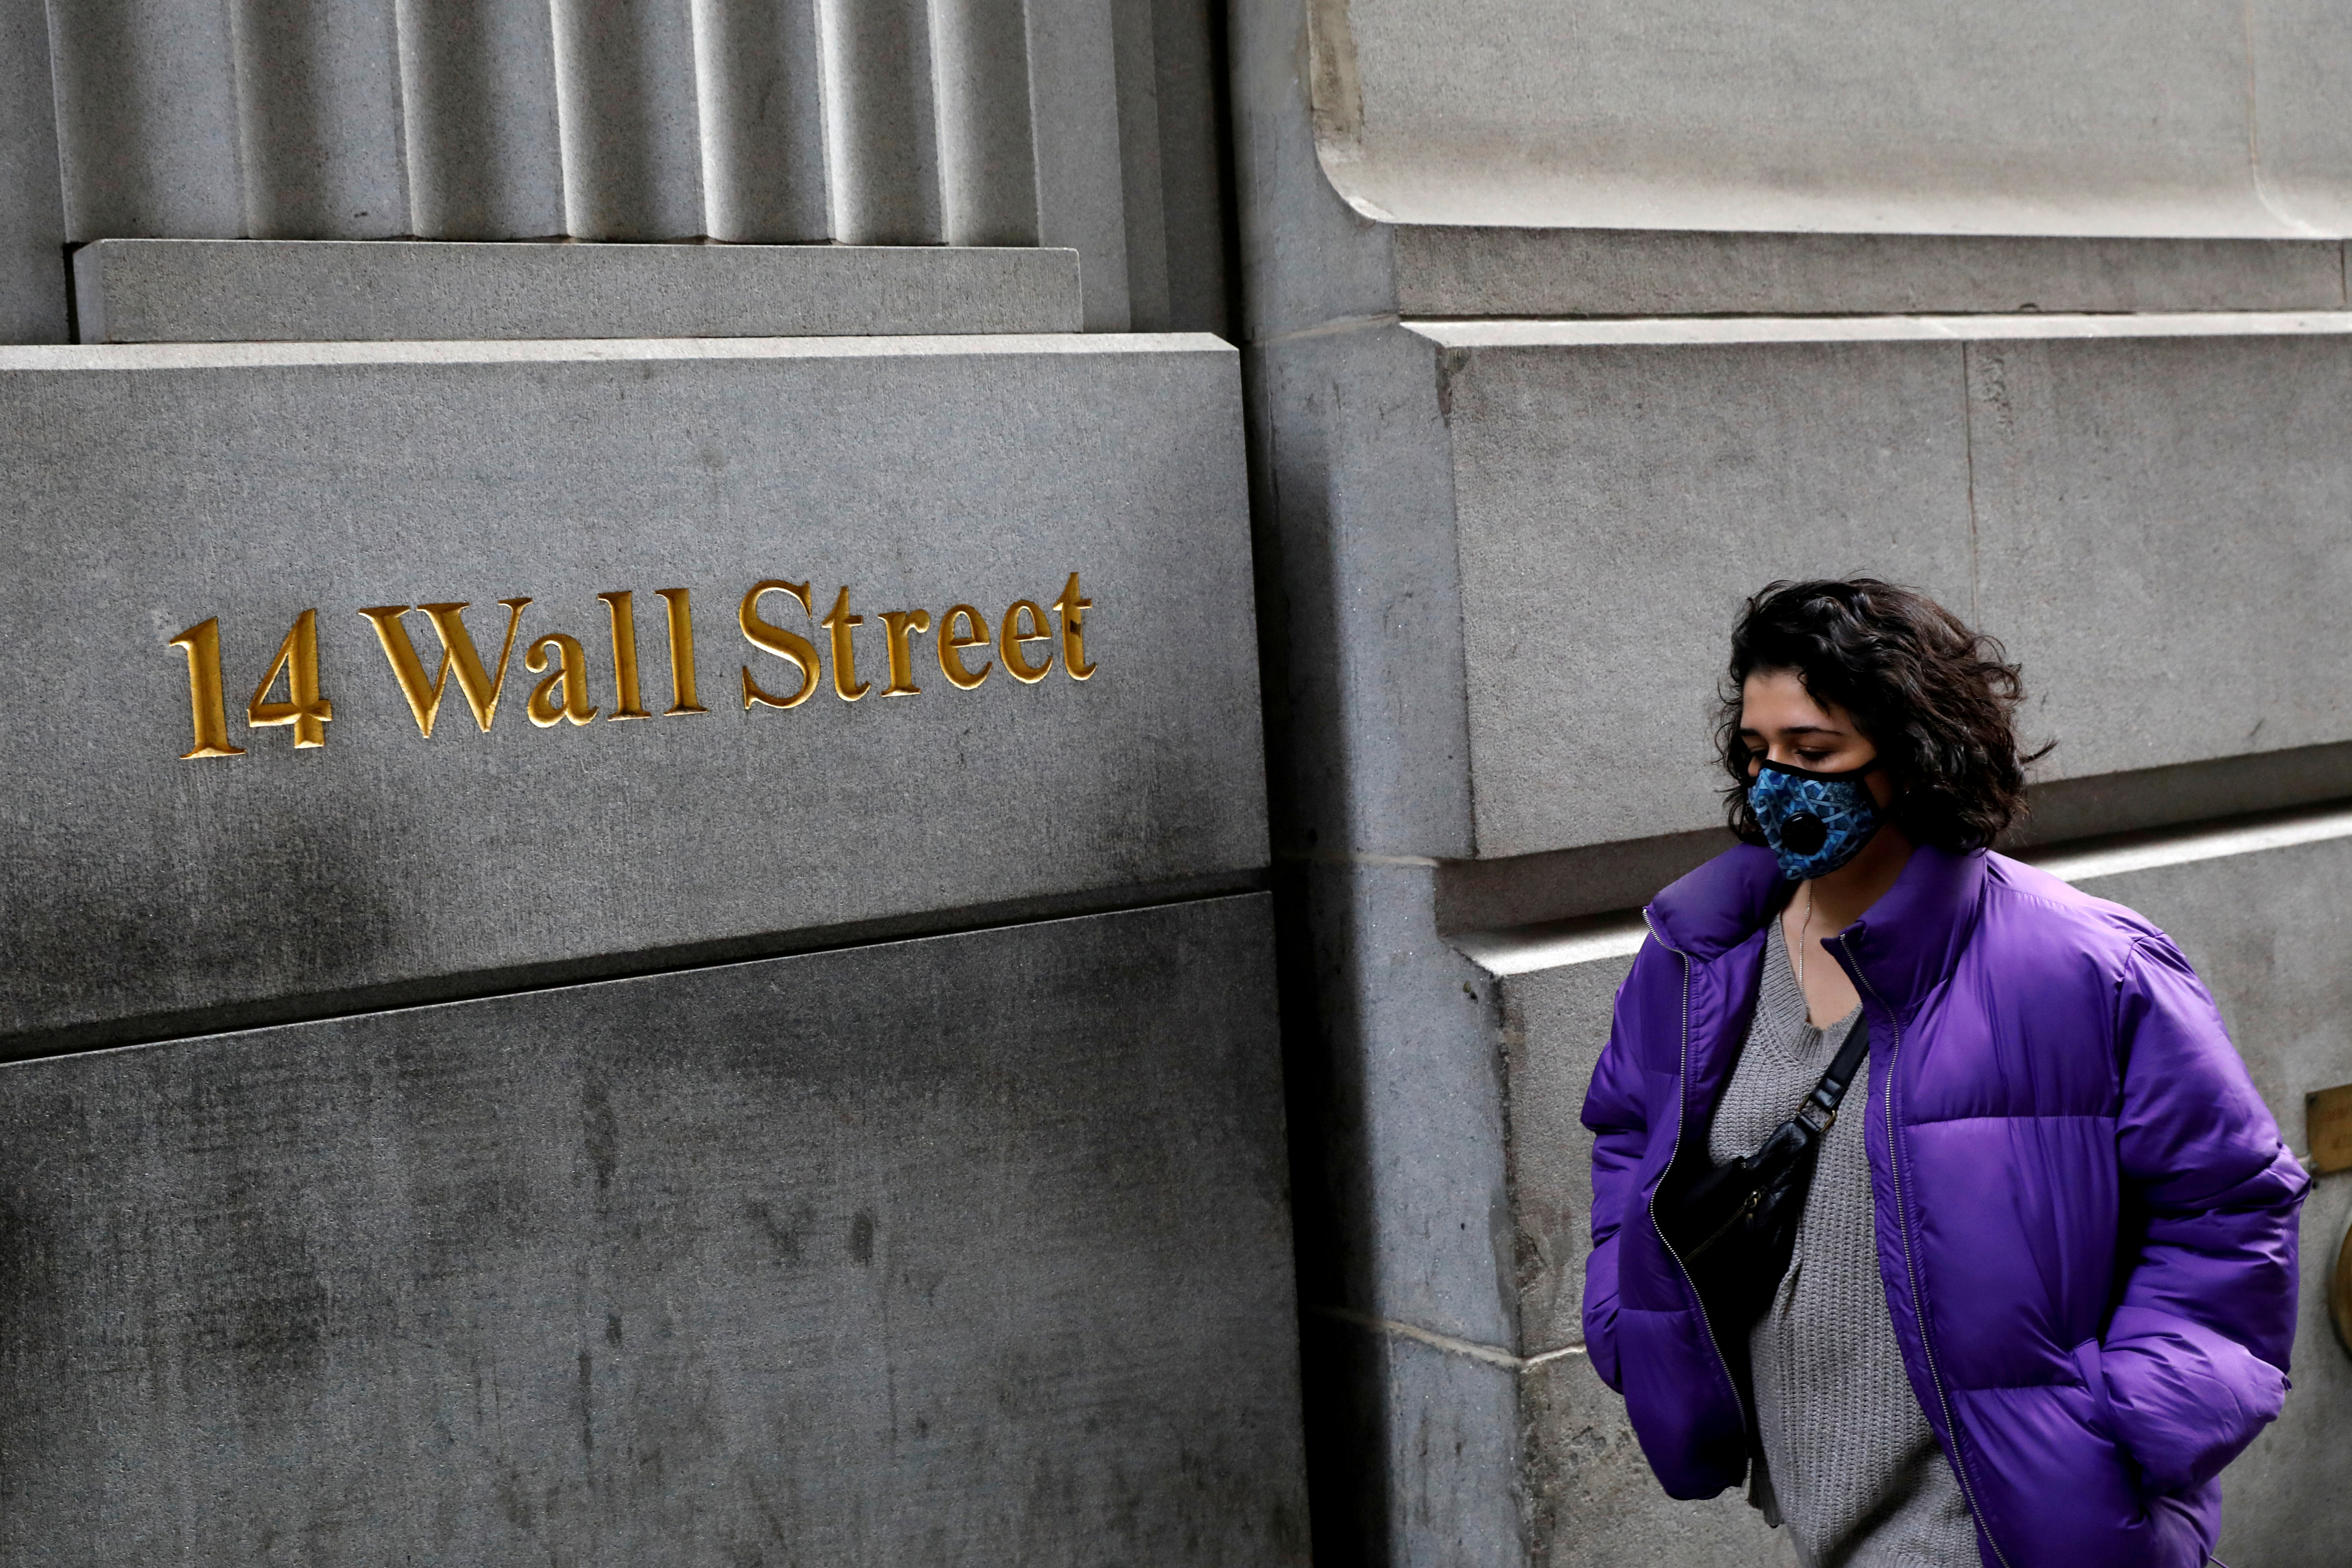 Wall Street termina en positivo gracias a sector tecnológico